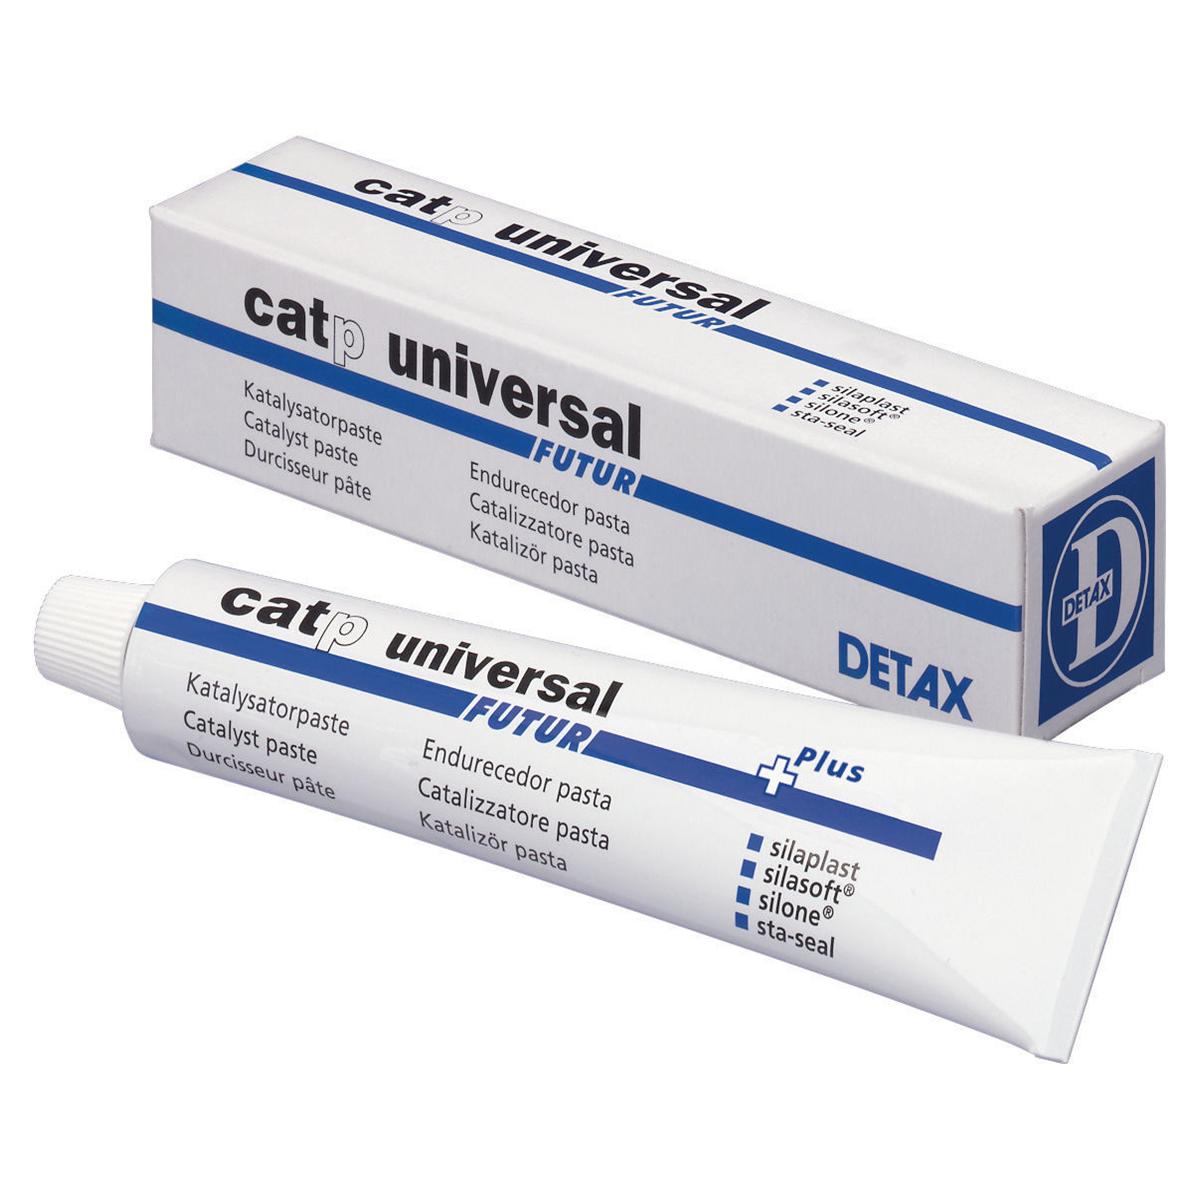 Silaplast cat p universal FUTUR - pte - Tube 35 ml